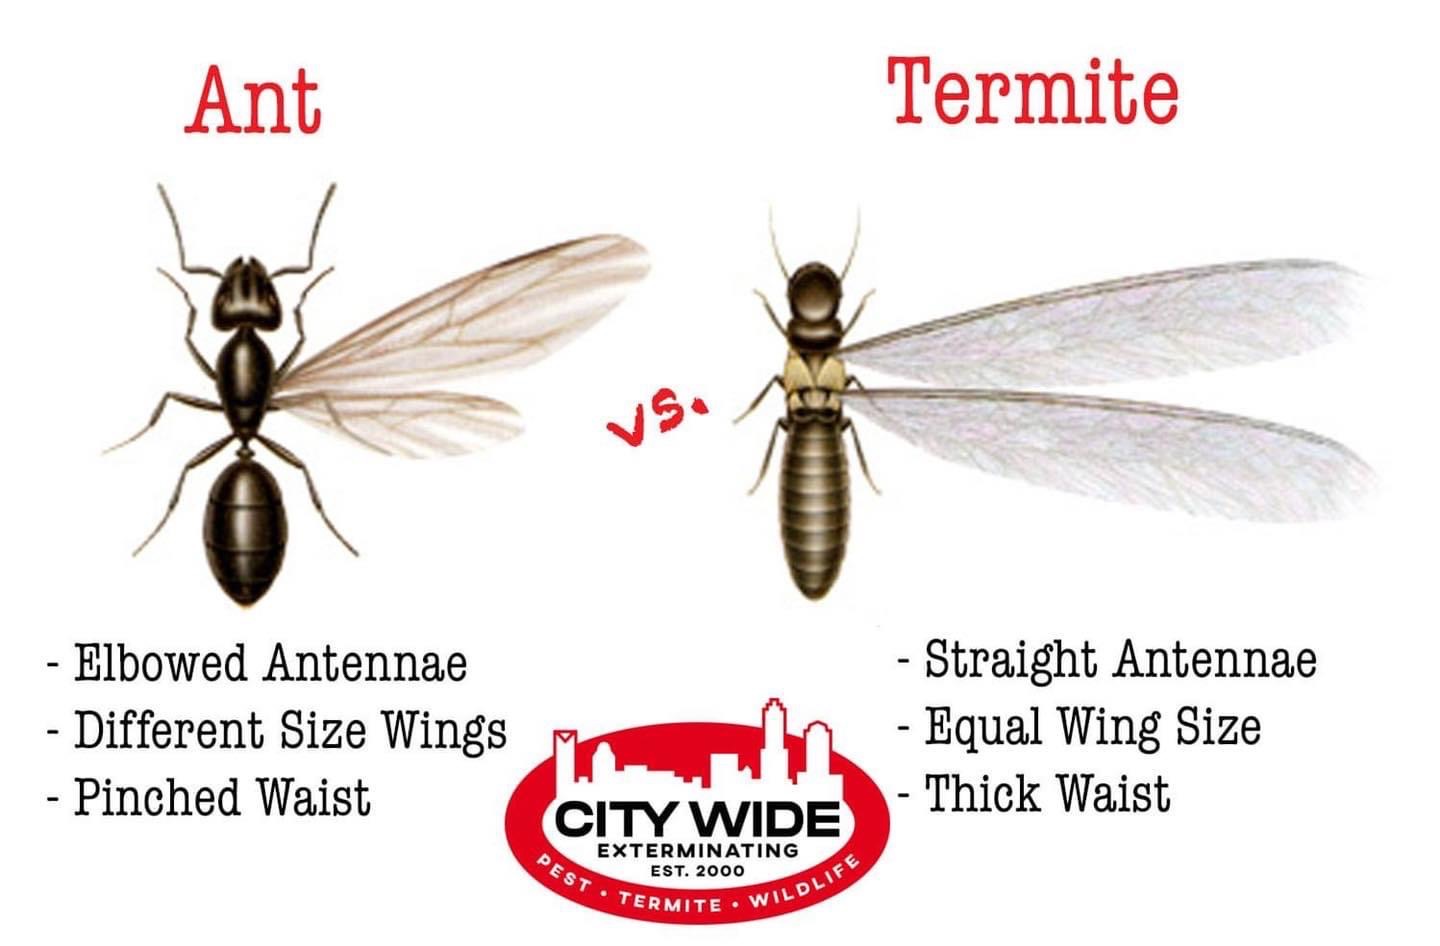 Ants Vs Termites